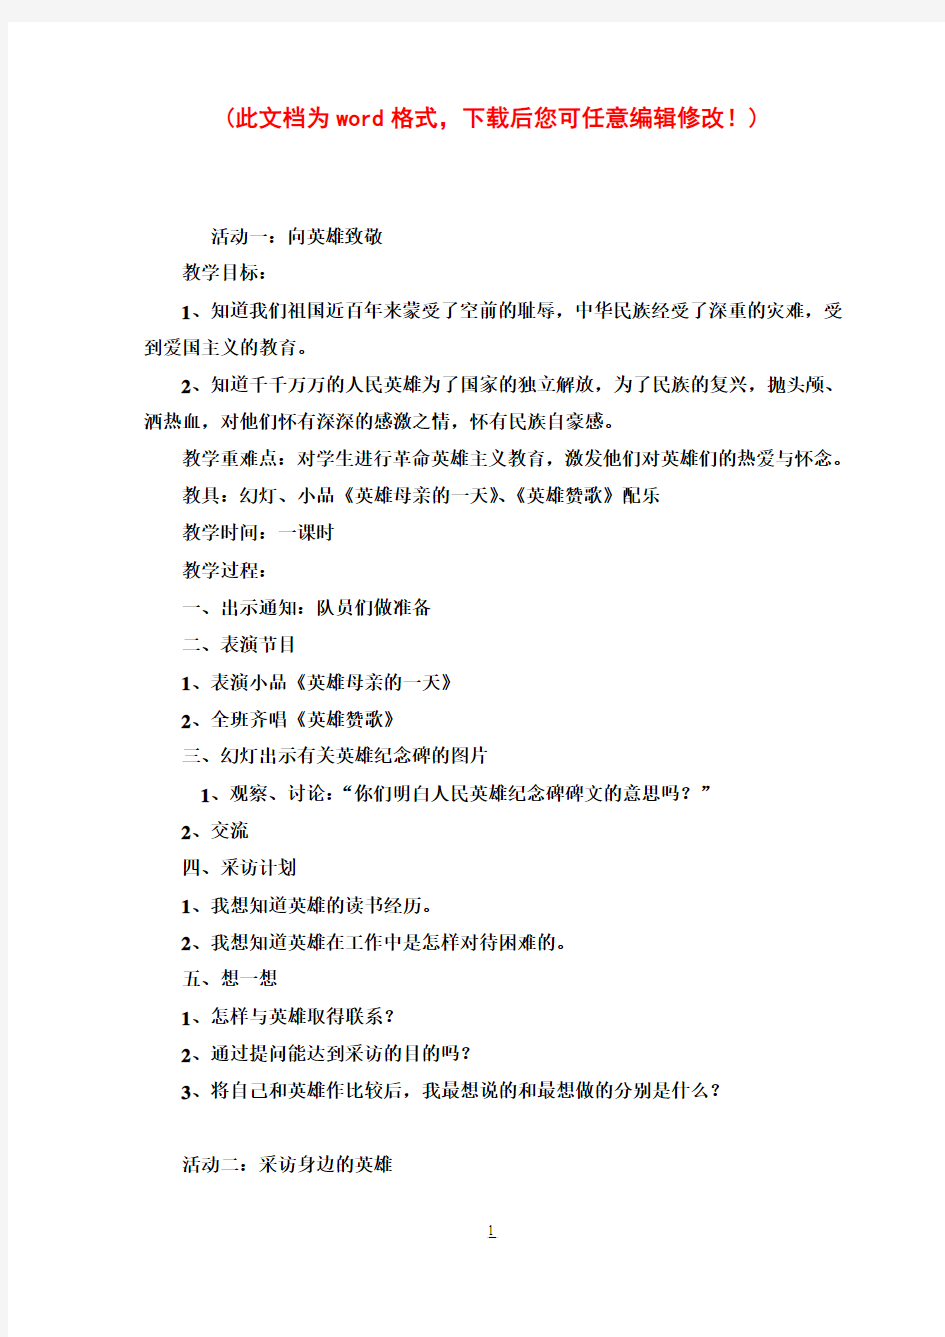 小学五年级下册综合实践活动教案(上海科技教育出版社)1